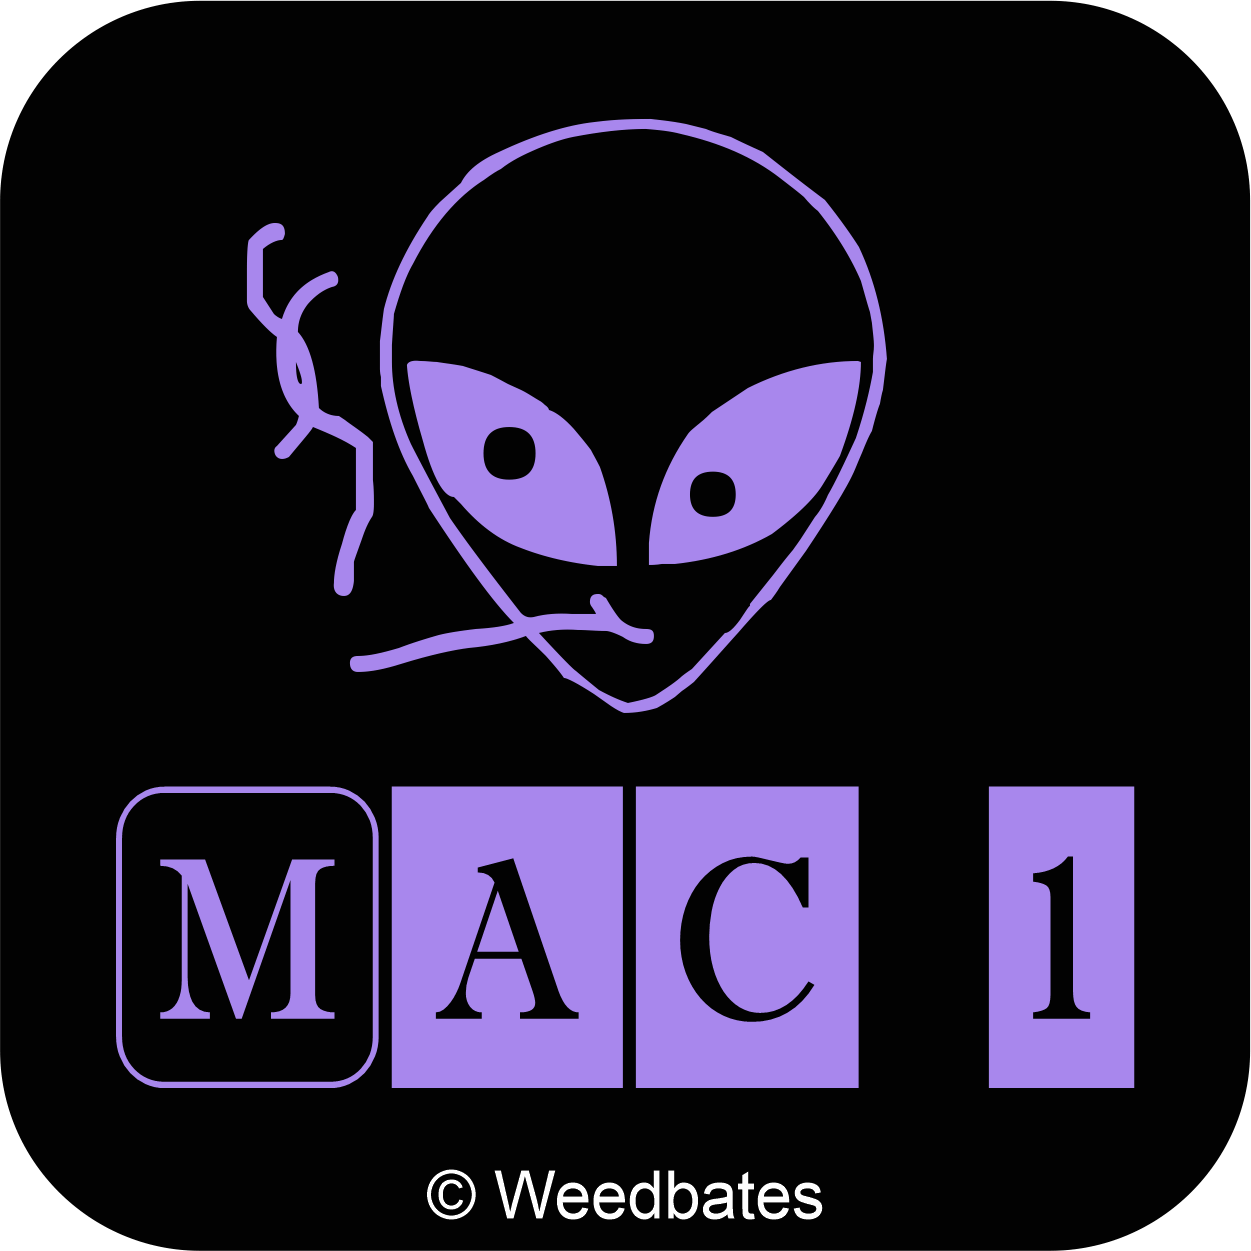 Mac 1 cannabis strain